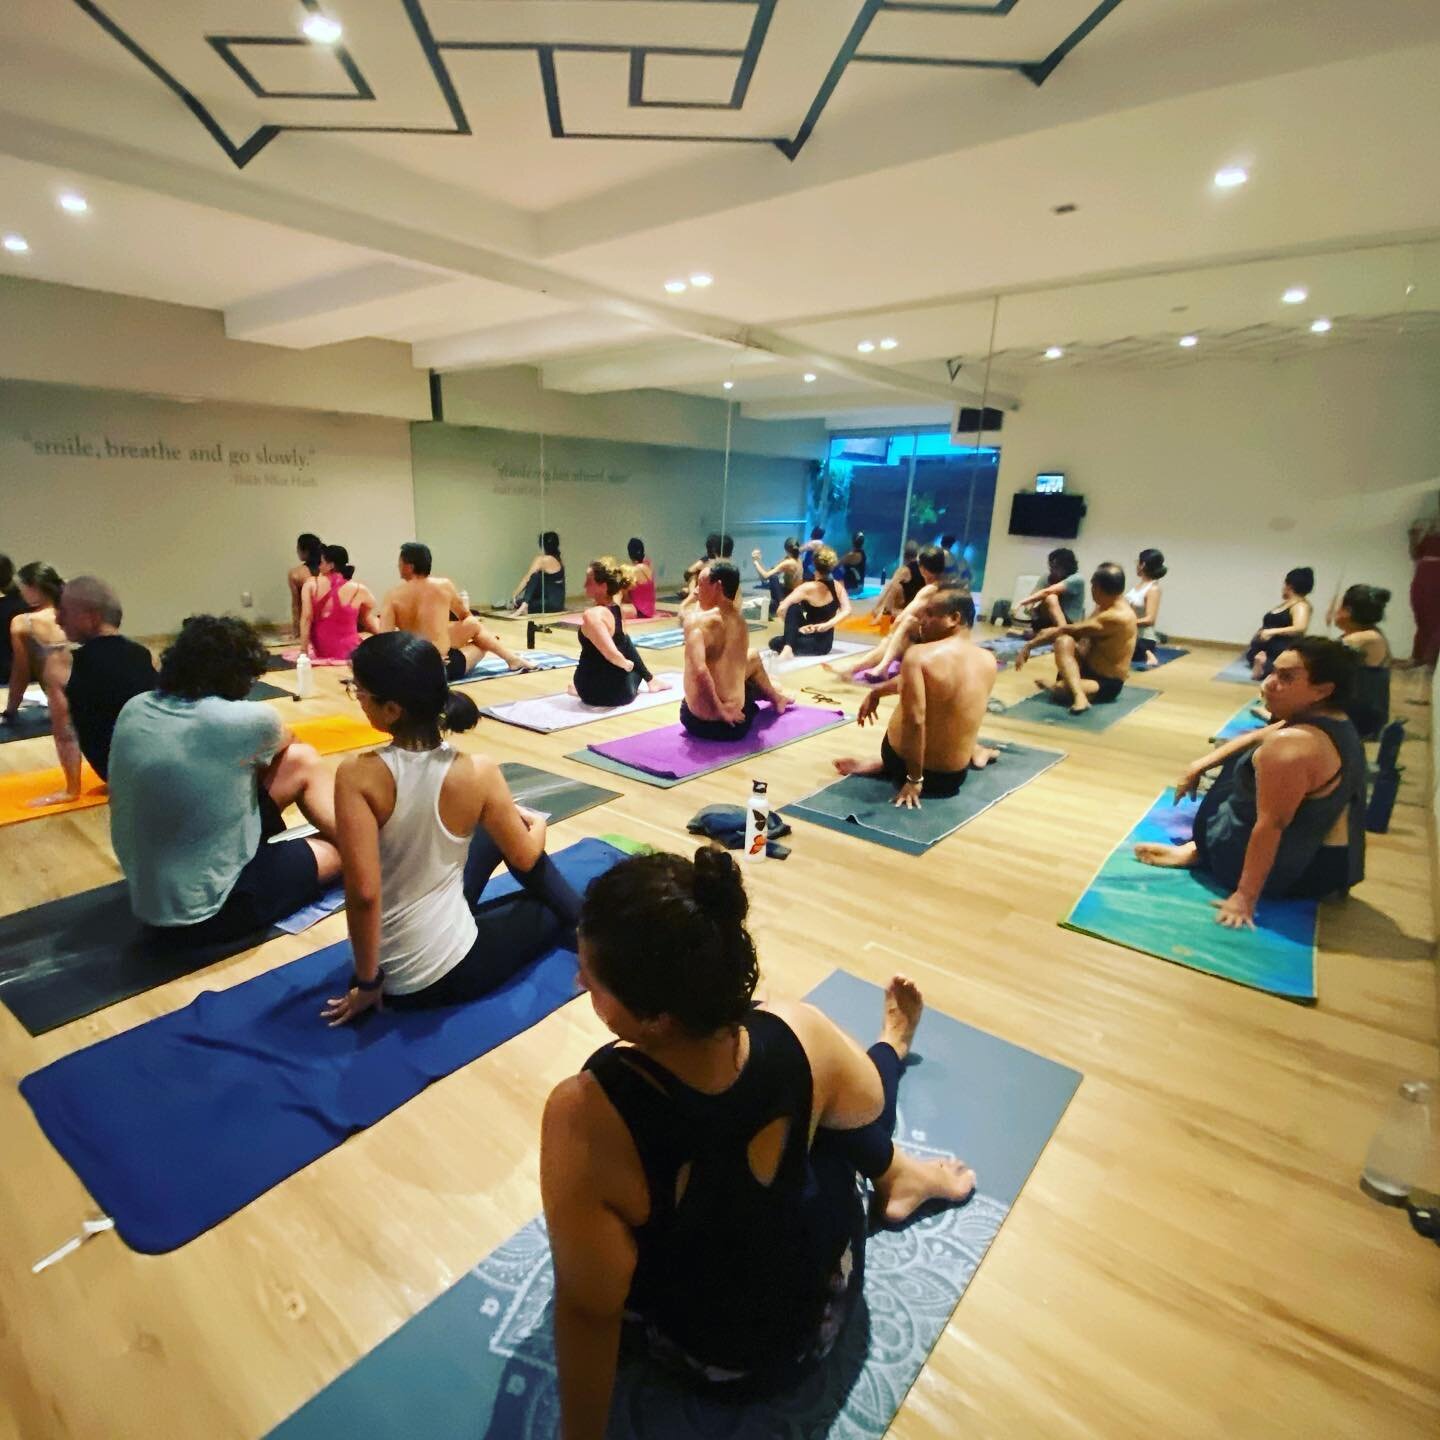 S&aacute;bado de Bikram 90. 9:25 todos los s&aacute;bado la serie de 26 posturas y 2 ejercicios de respiraci&oacute;n para principiantes. &iexcl;Pru&eacute;bala!  #hotuoga #26+2 #yogaclass #yogacdmx #strengthtraining  #myyogalife #stayhealthy #bikram